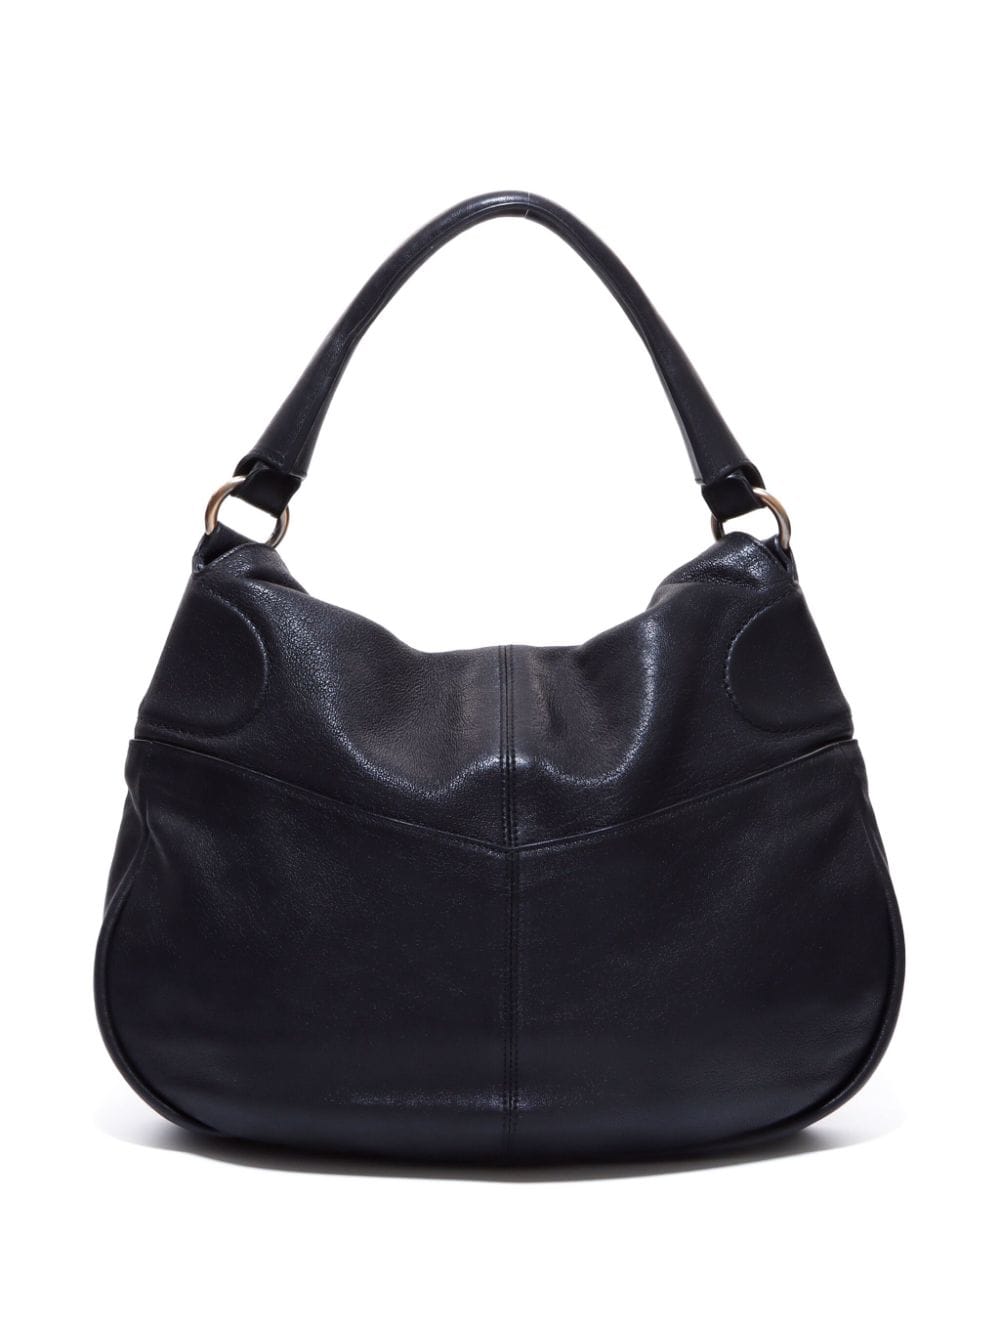 Ferragamo Pre-Owned Gancini leather shoulder bag - Zwart